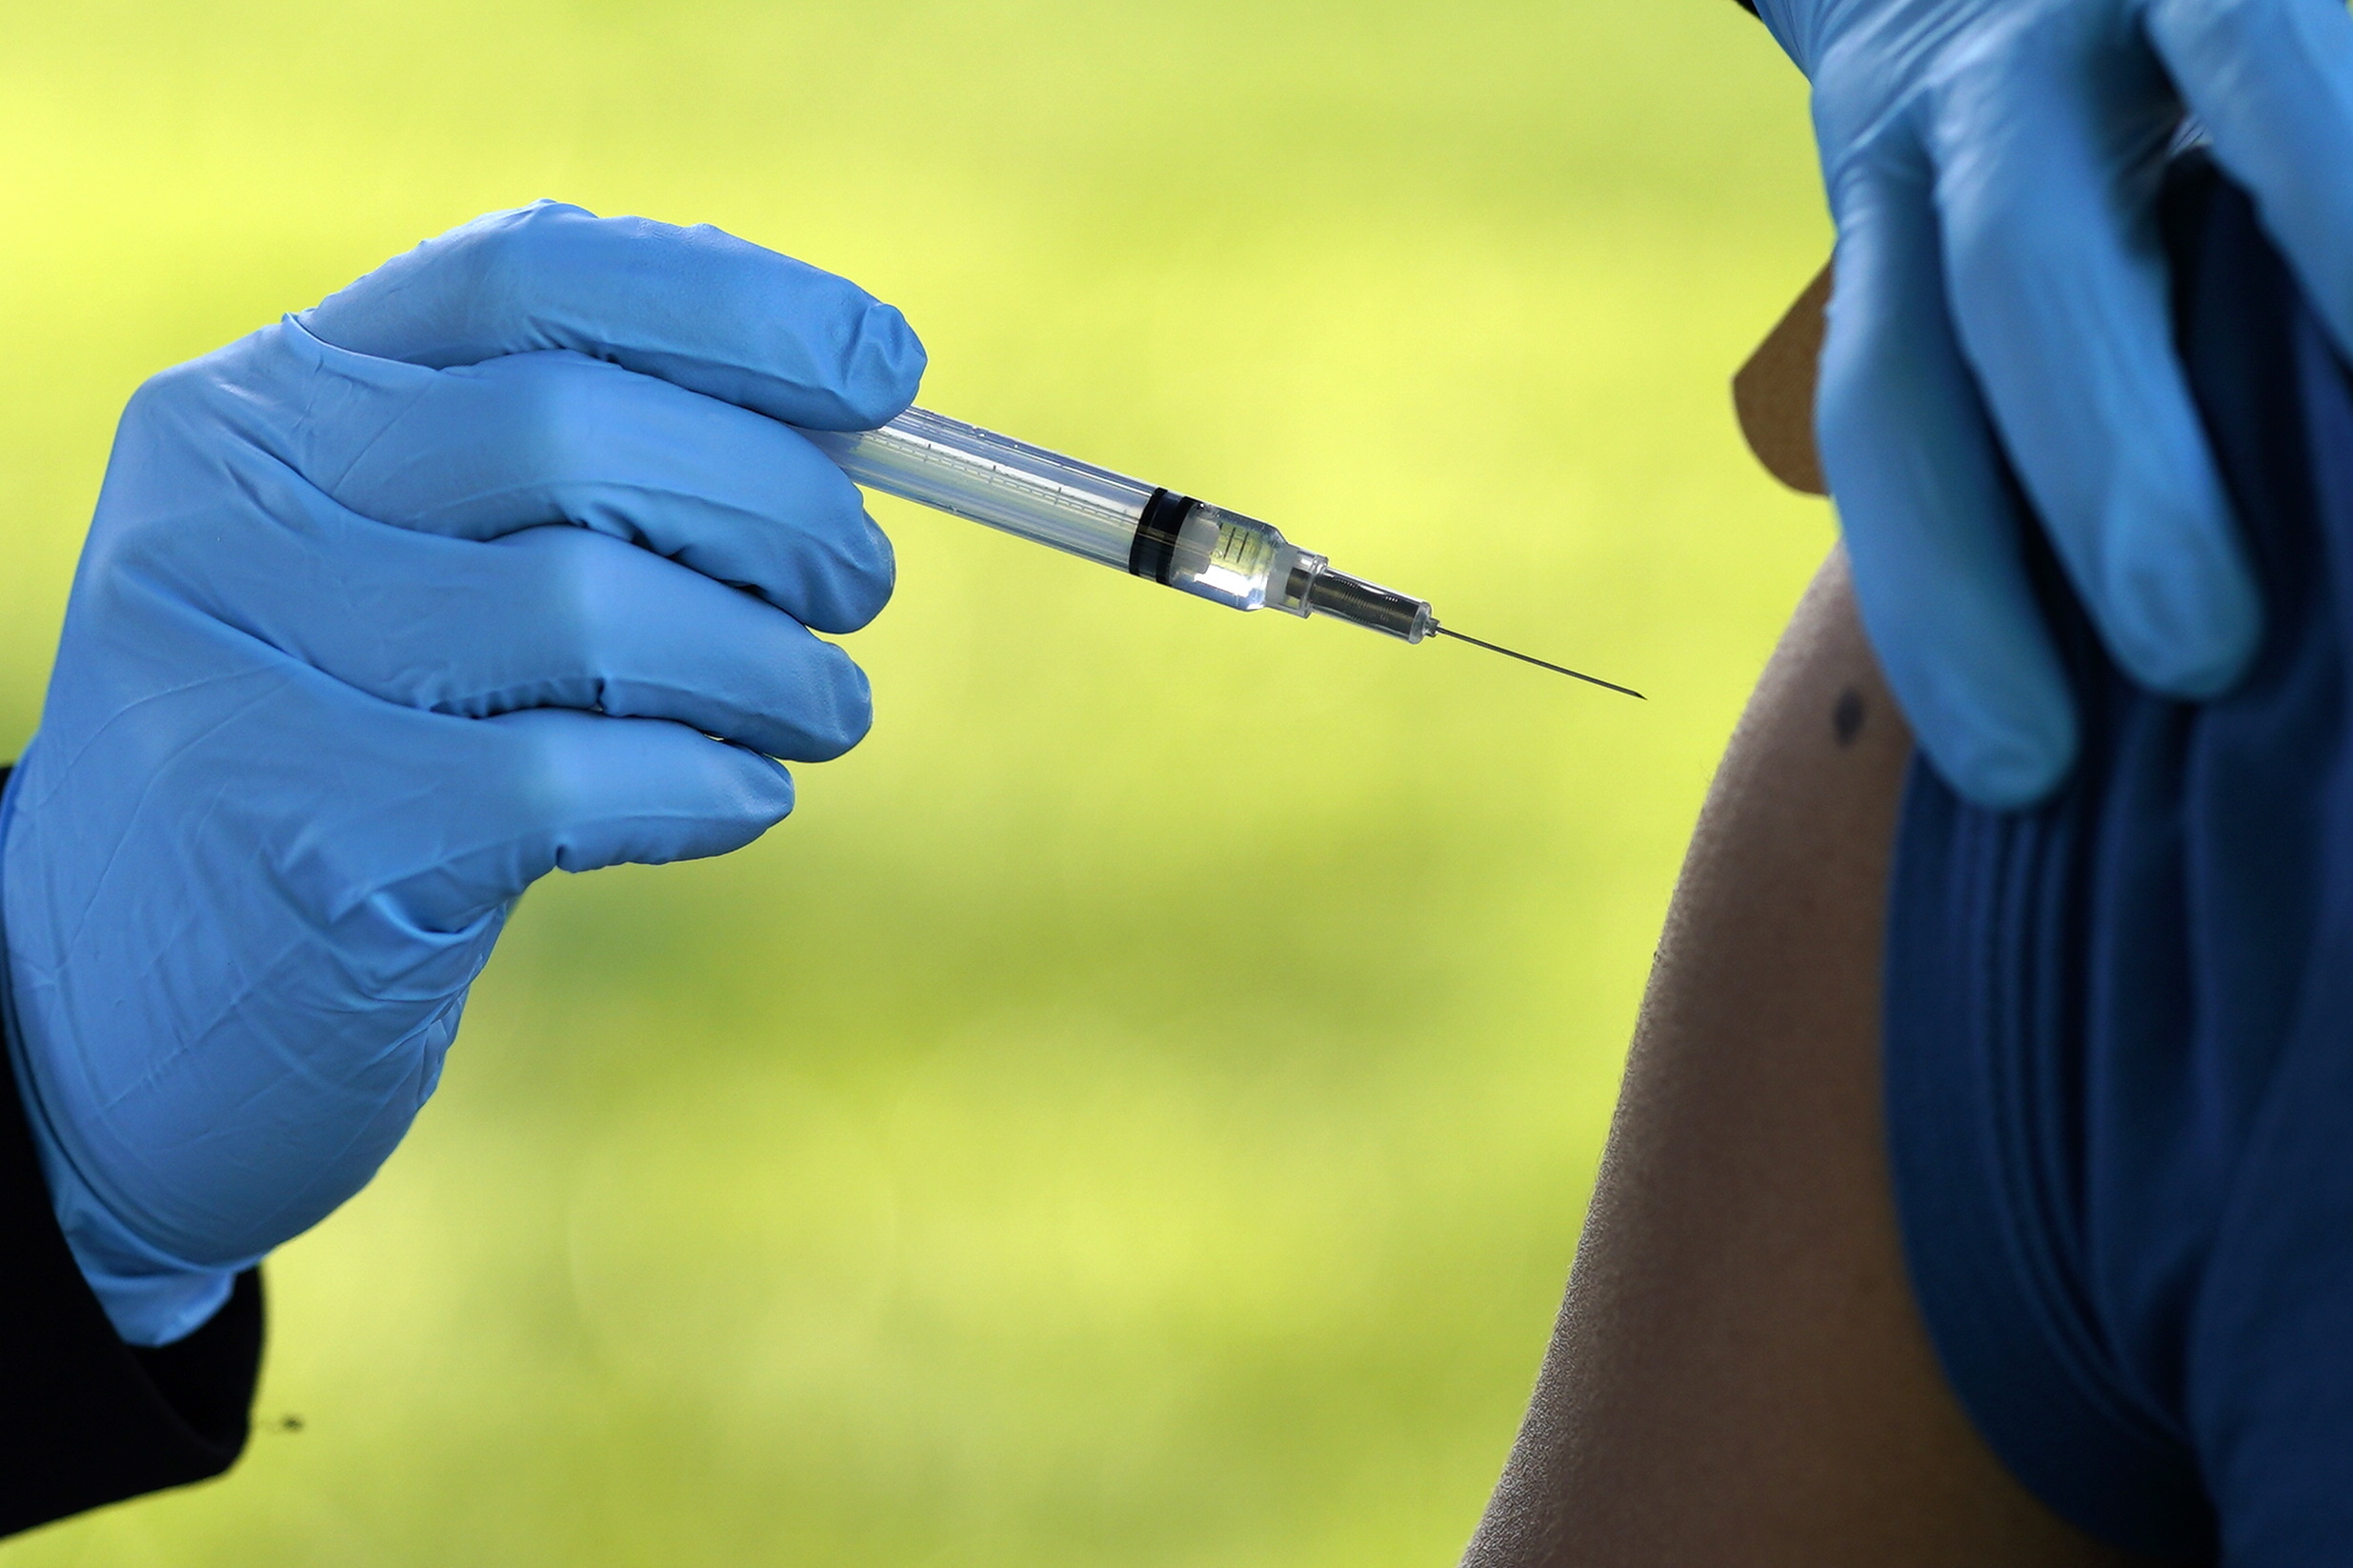 Aproximadamente 17 millones de estadounidenses recibieron la vacuna de J&J contra el COVID-19 (EFE/EPA/WILL OLIVER)